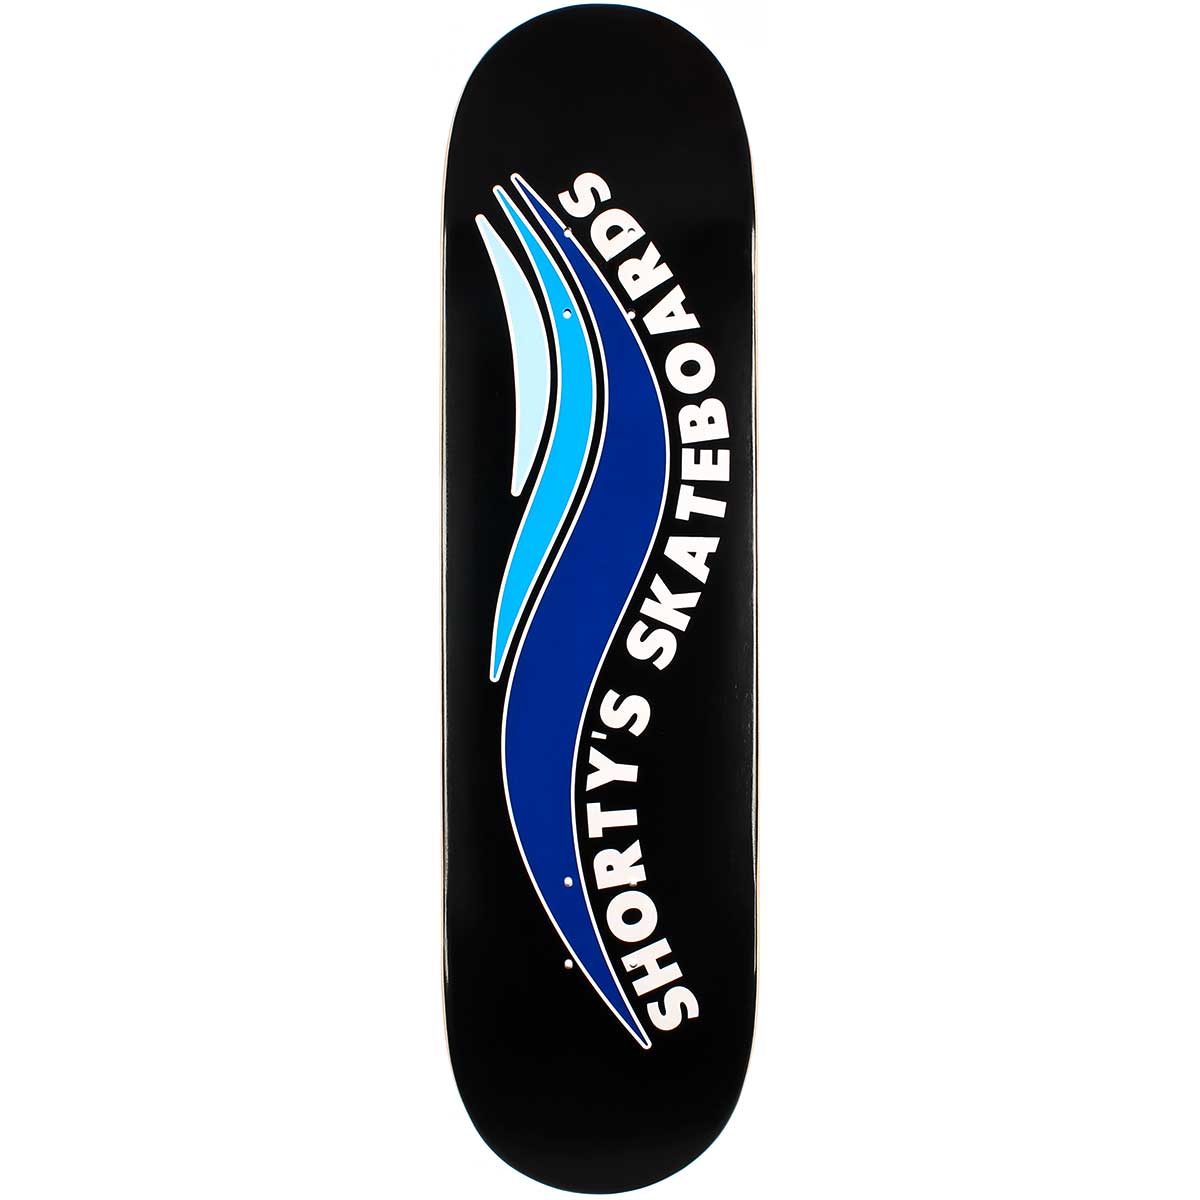 SHORTYS DECK - SKATE WAVE (8.125") - The Drive Skateshop